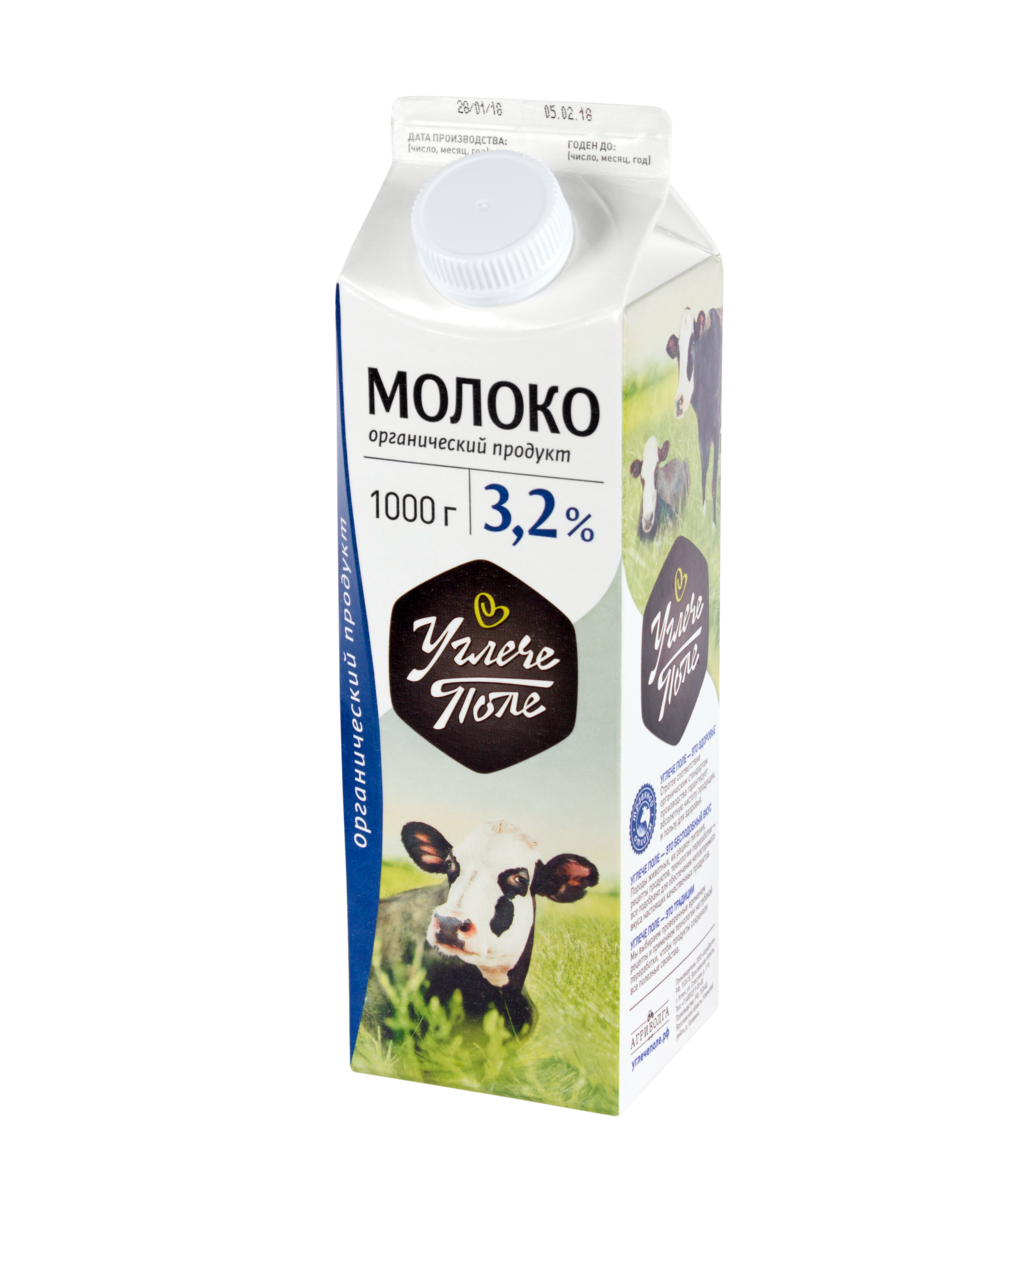 Молоко УГЛЕЧЕ ПОЛЕ 3,2% без заменителя молочных жиров, 1 л